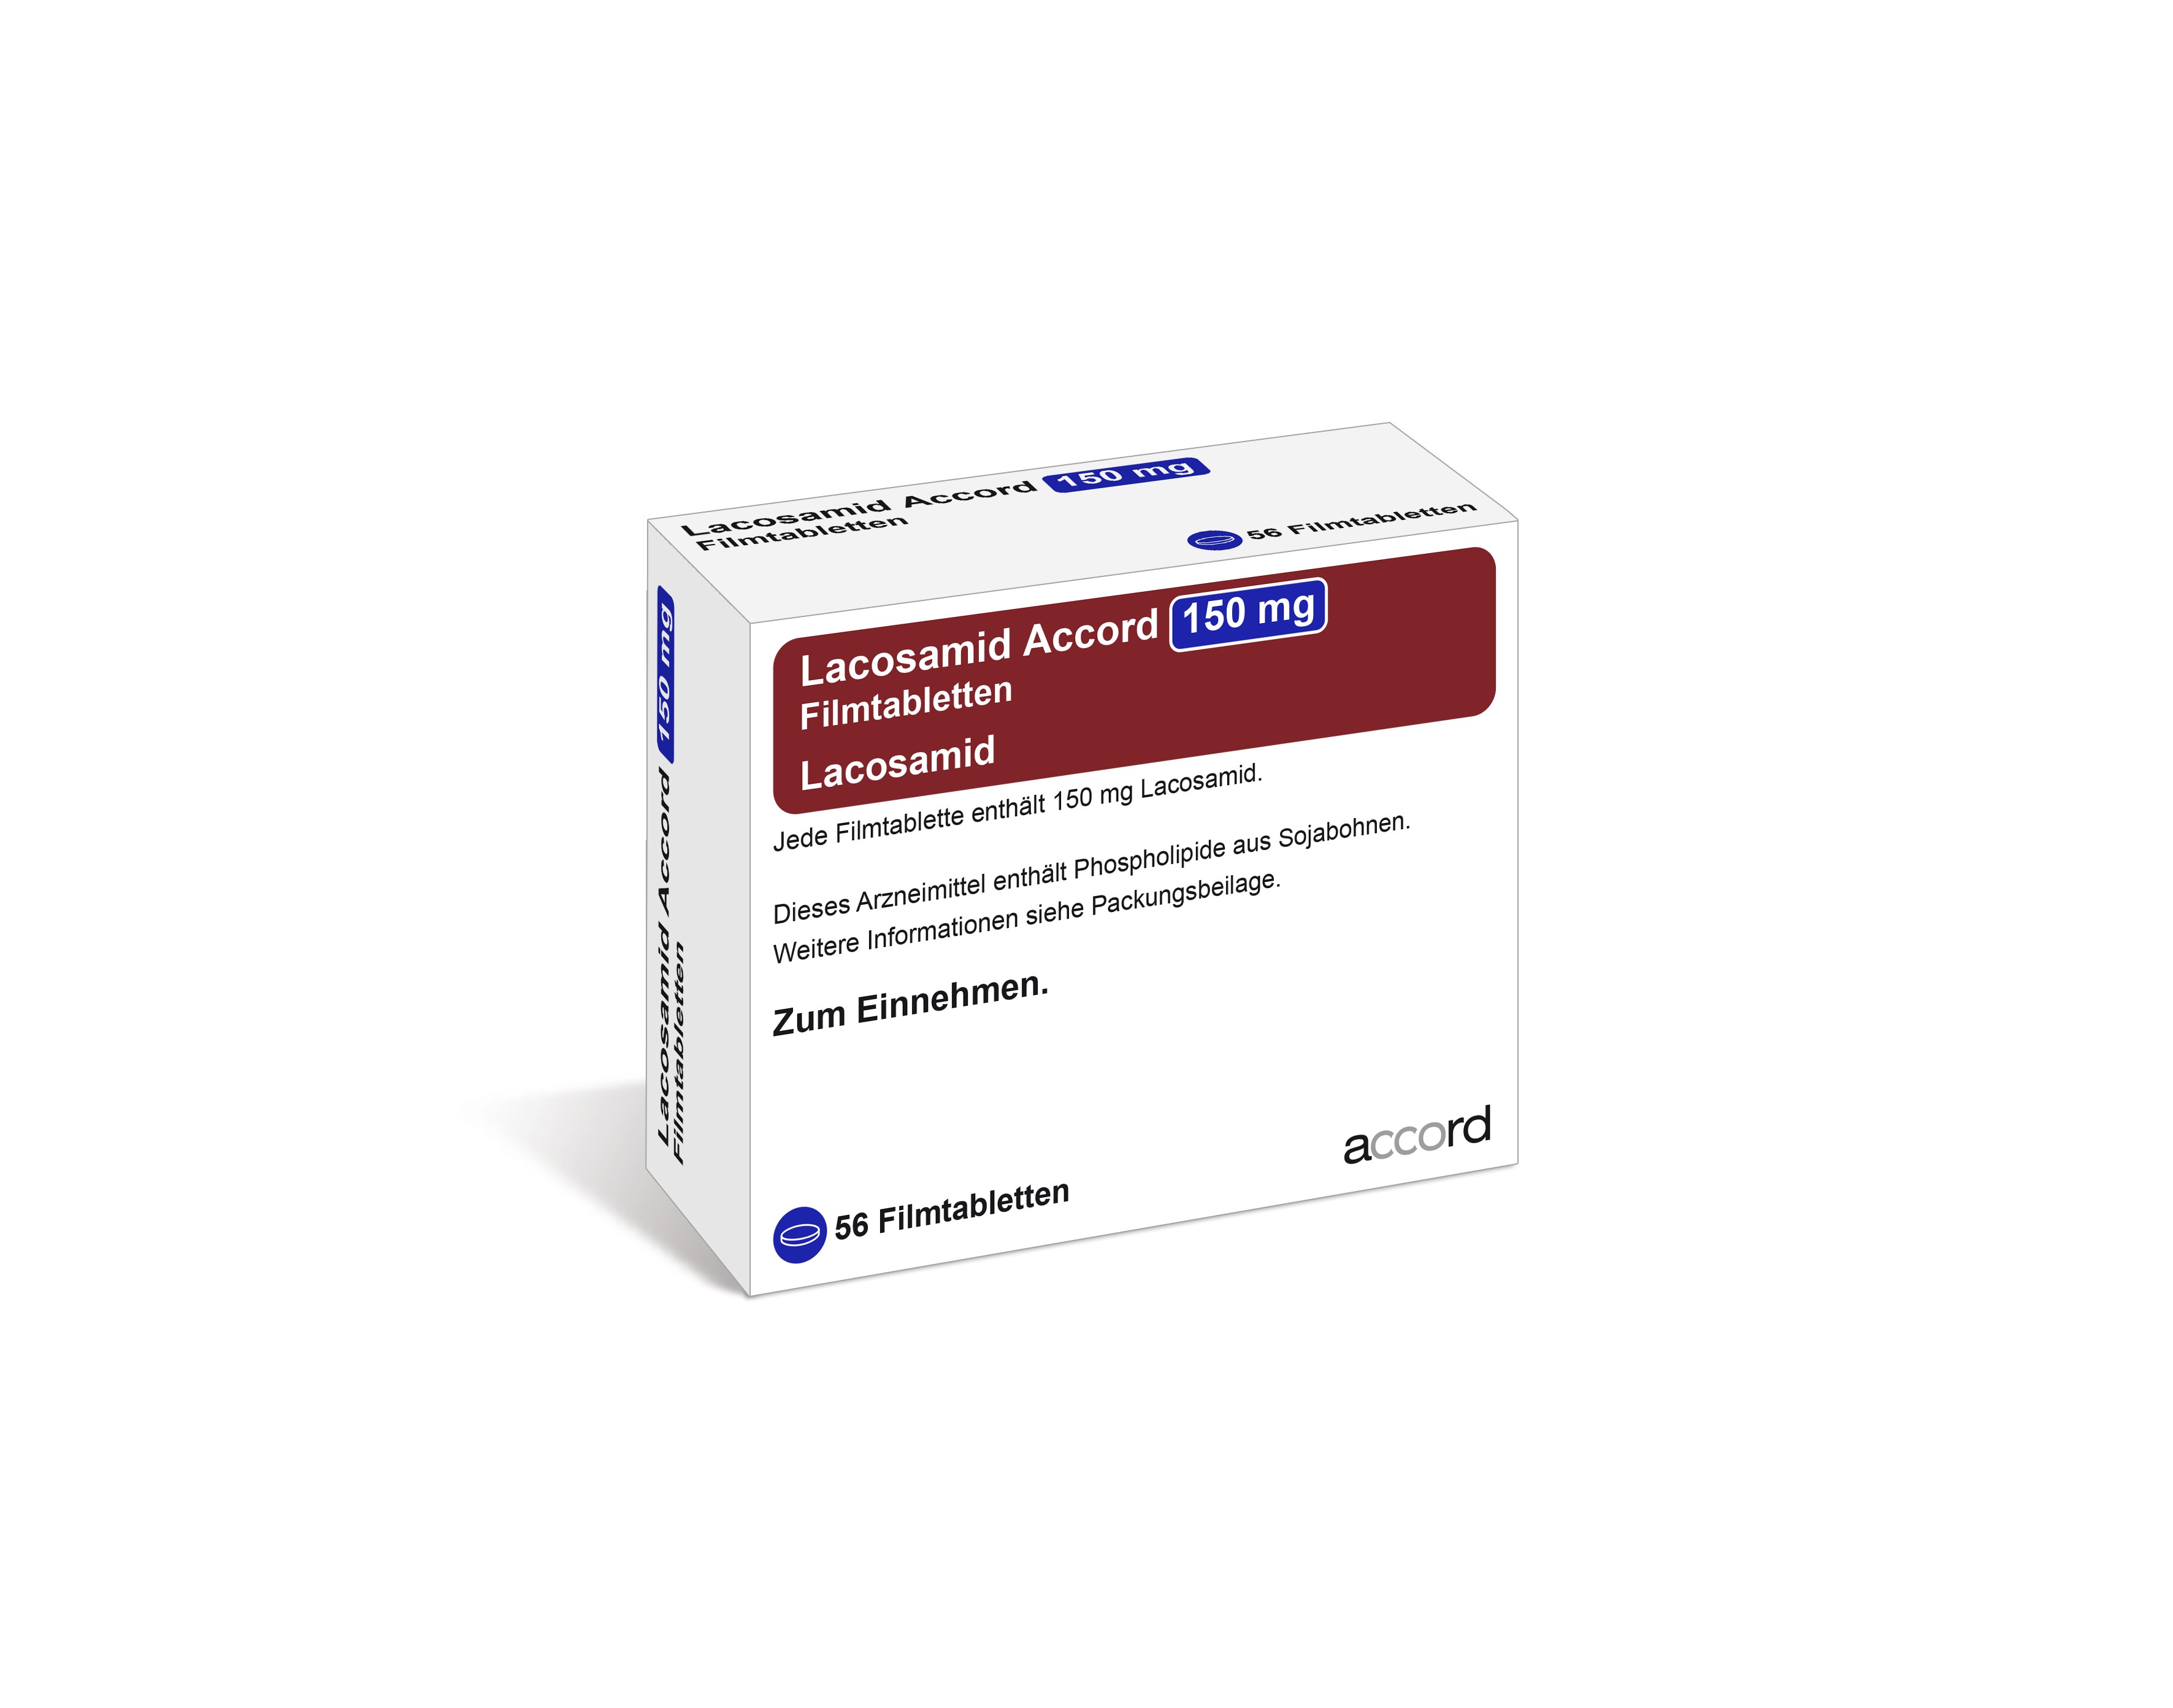 Accord Packshot Lacosamid 150 mg